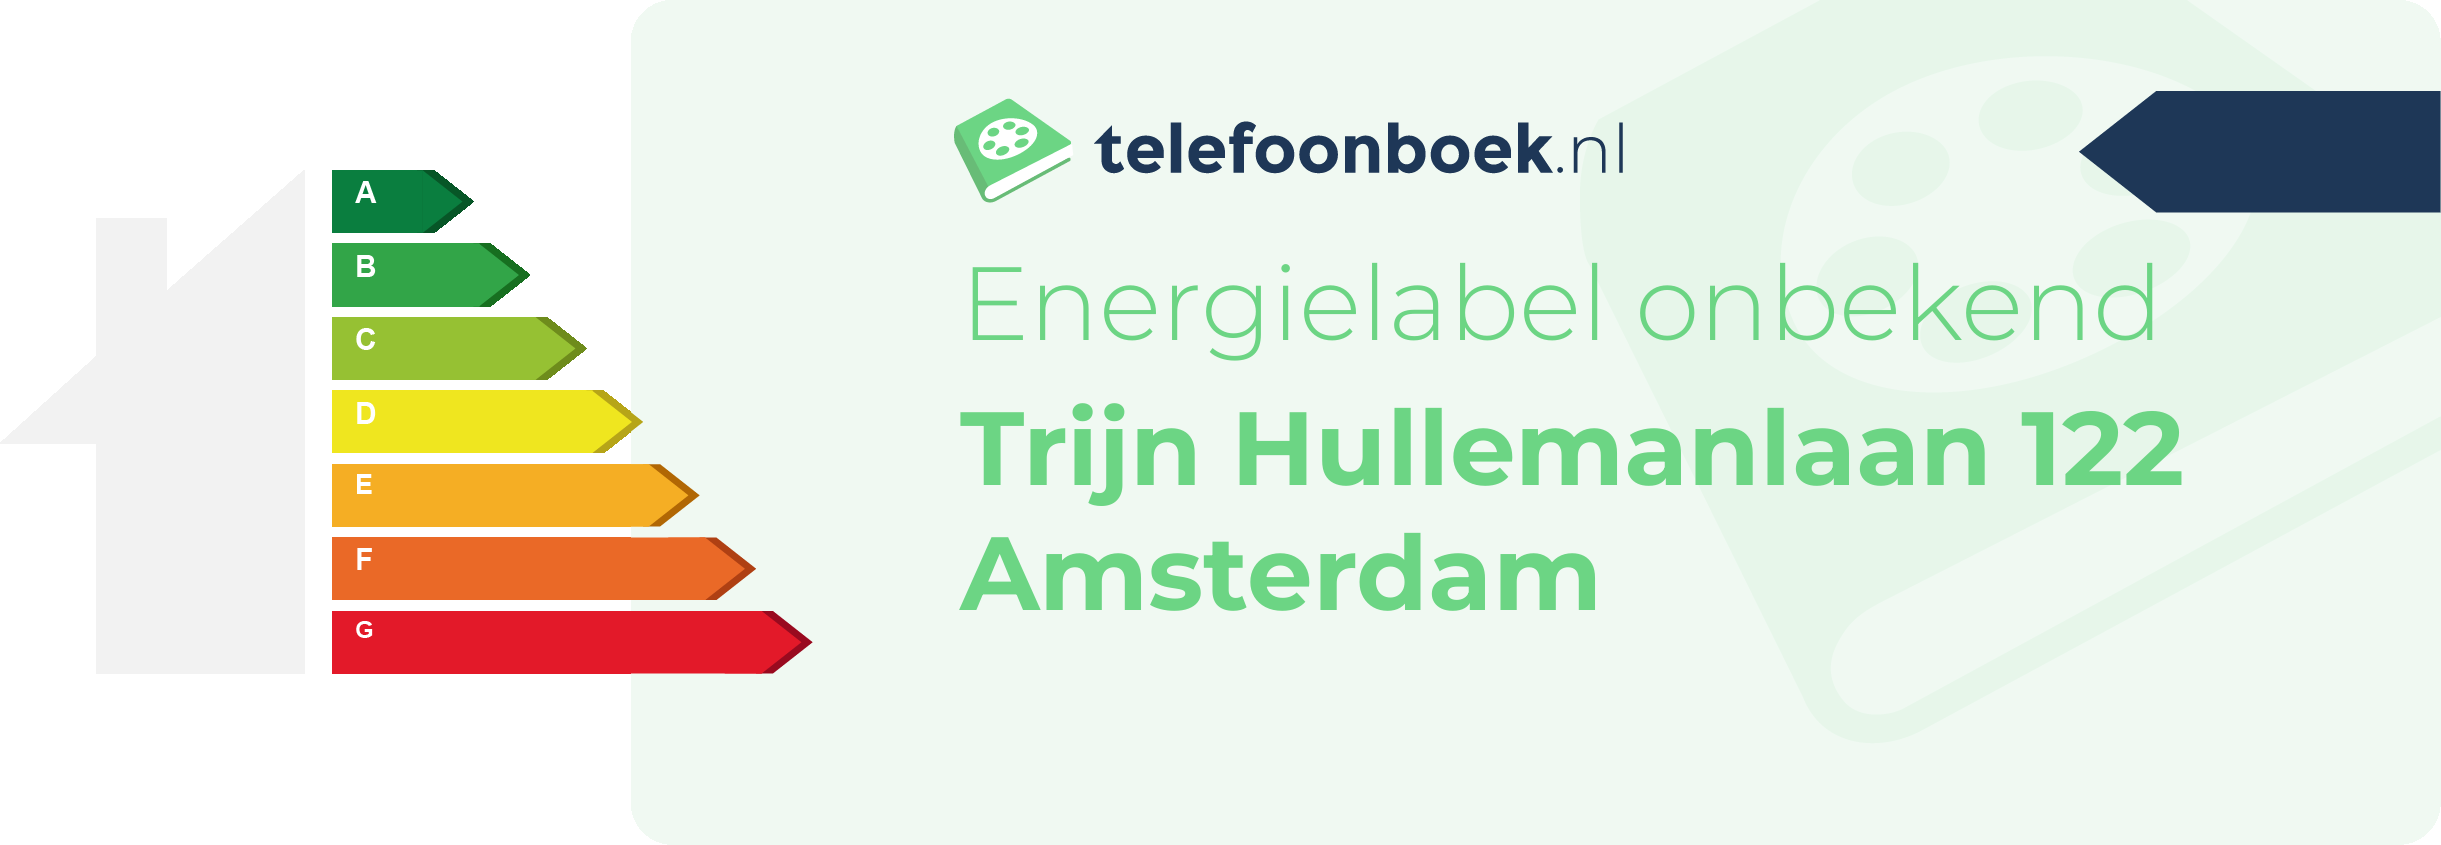 Energielabel Trijn Hullemanlaan 122 Amsterdam